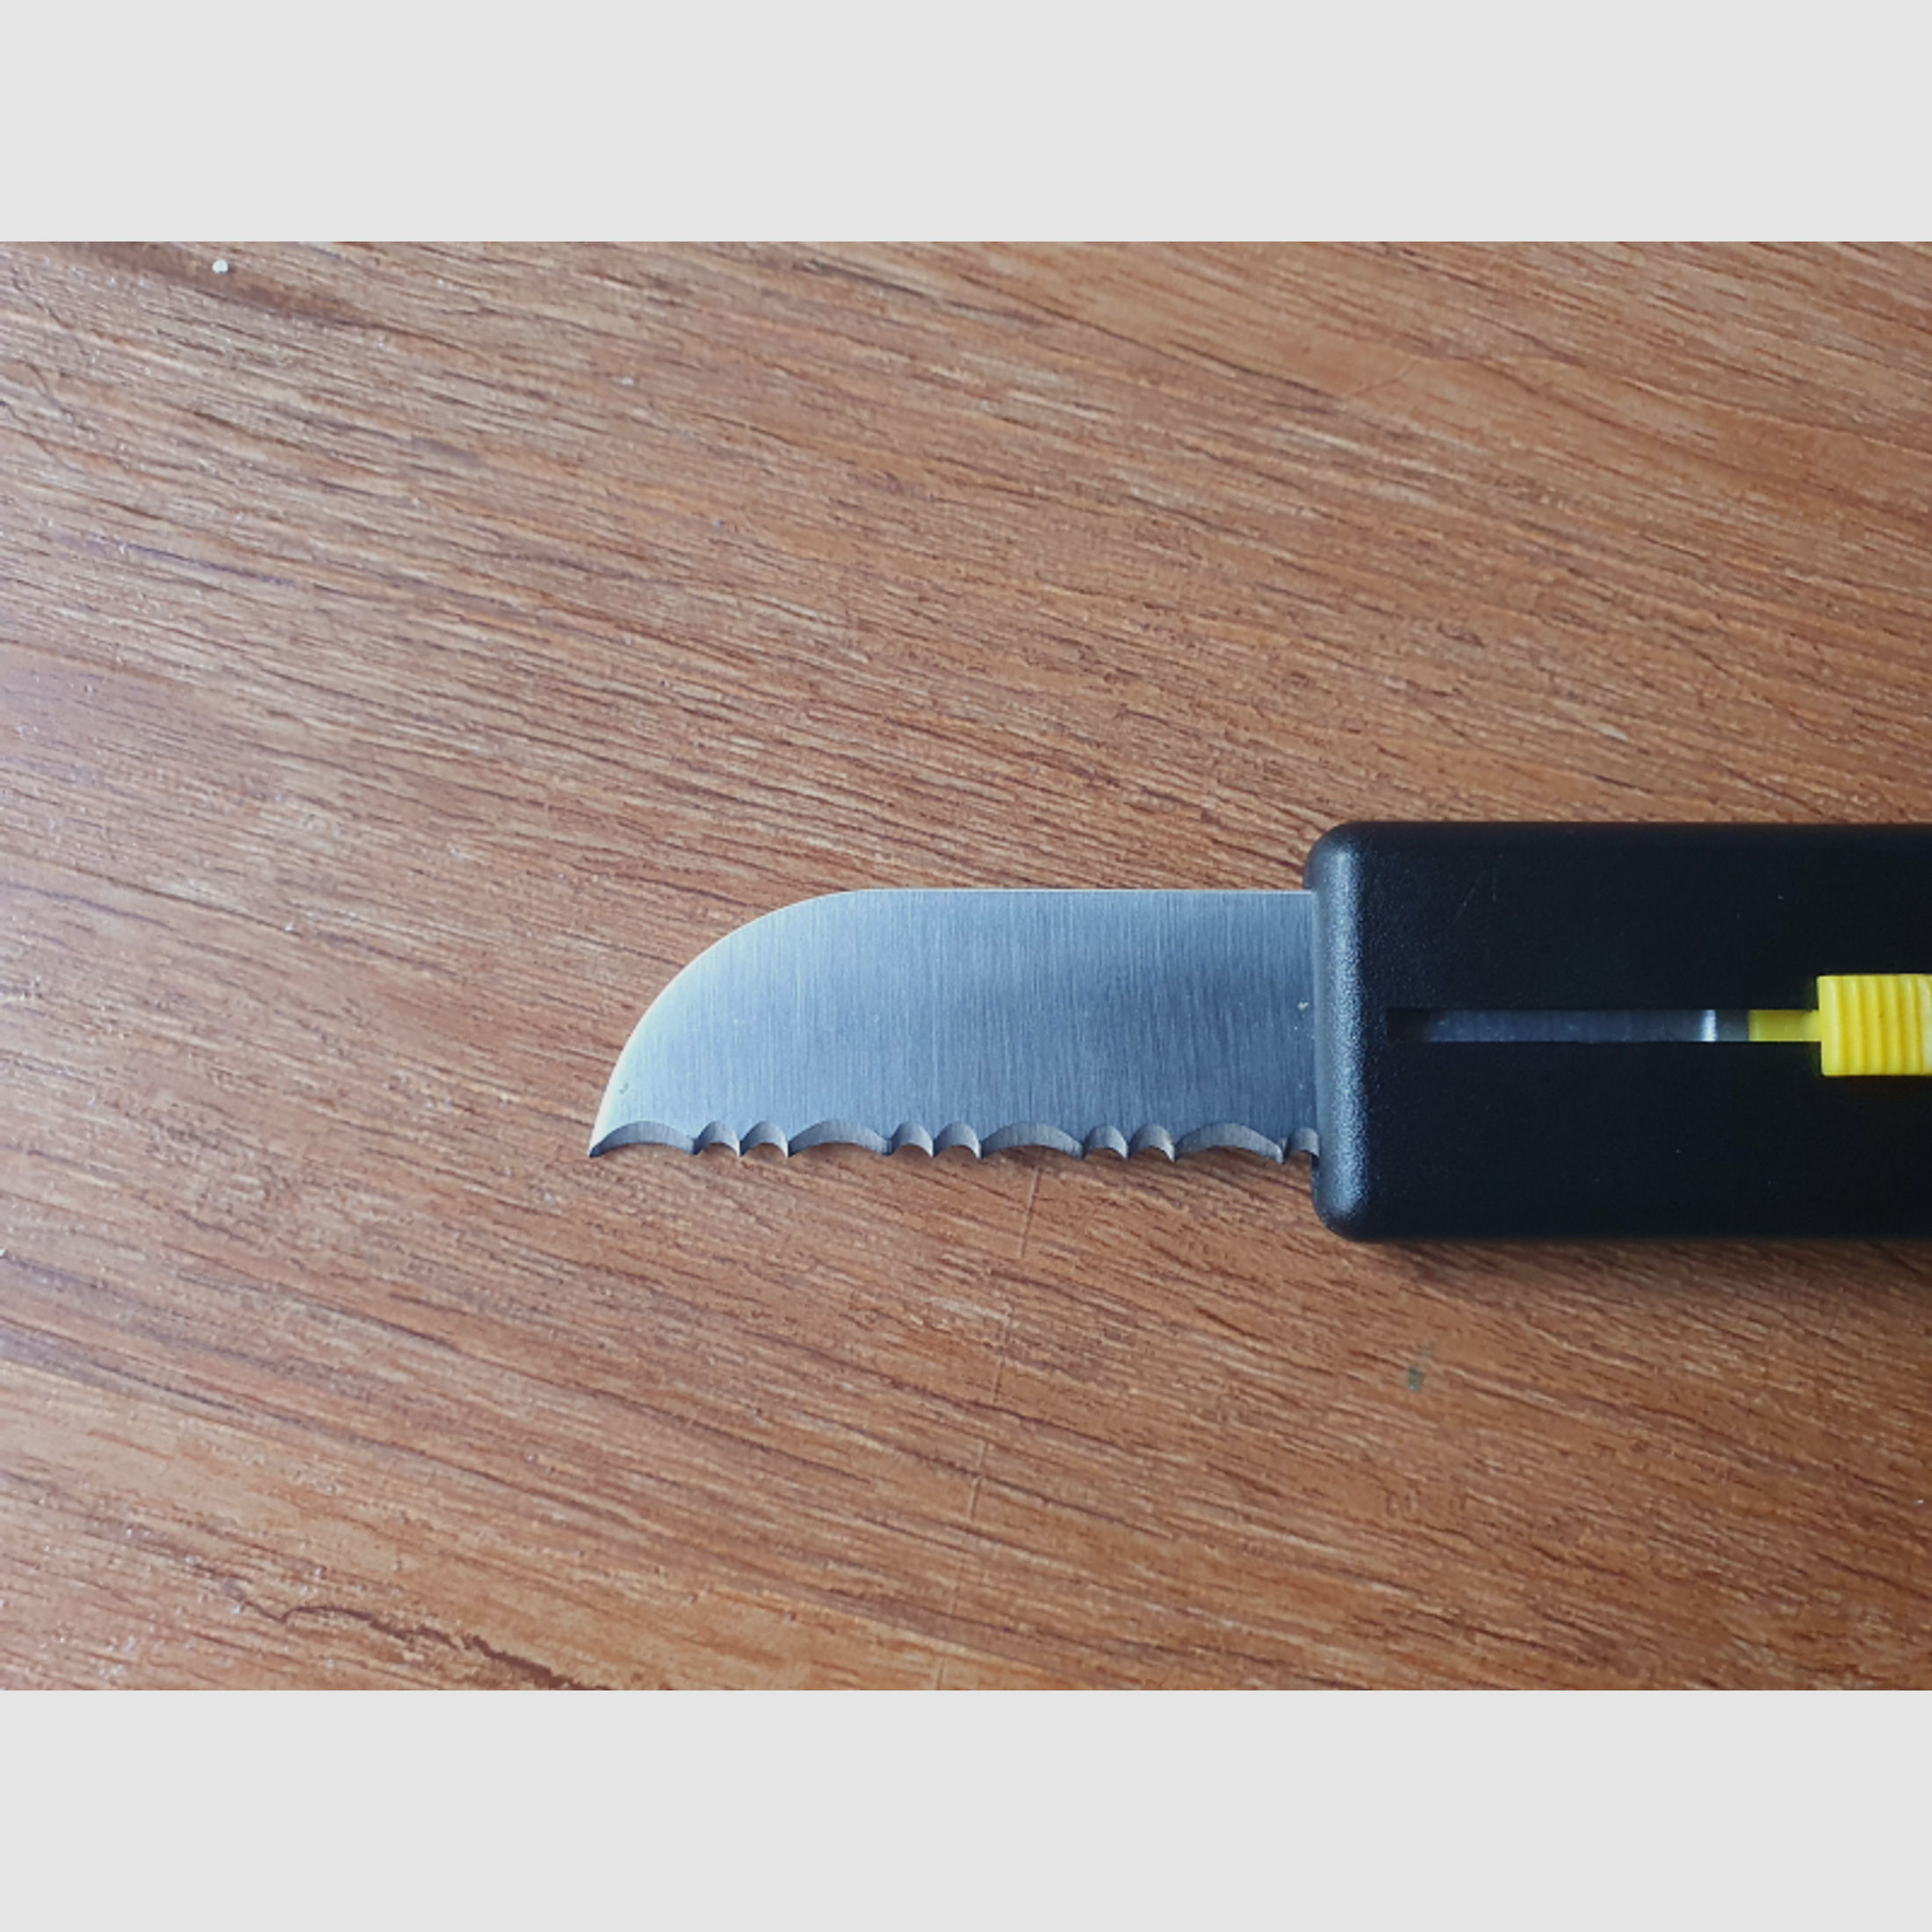 SOG USA EZ Knife, Taschenmesser